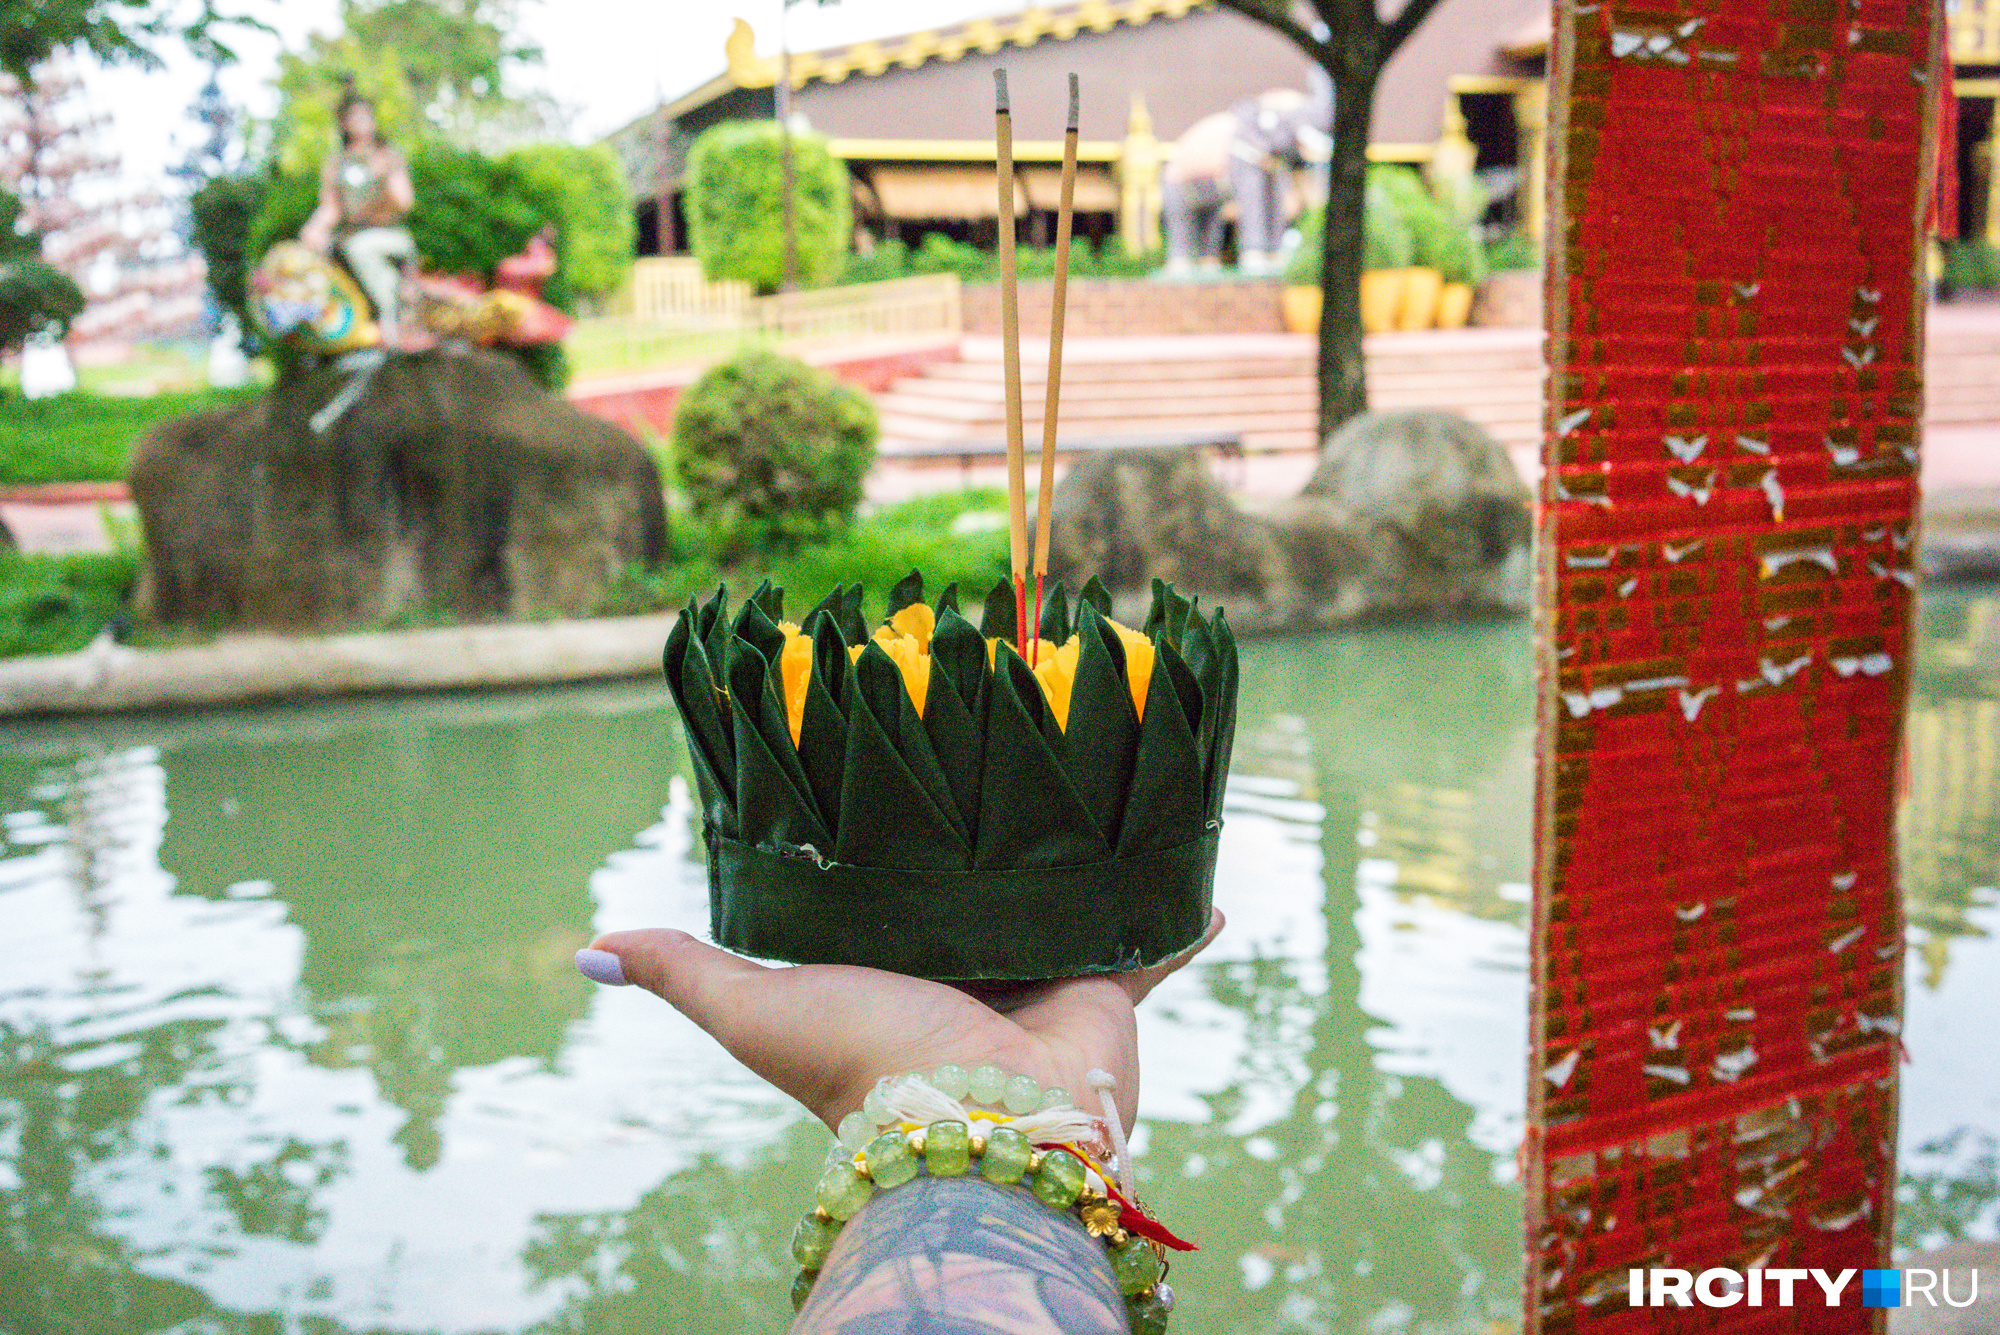 Еще одна тайская традиция — загадывать желание и отпускать в воду кораблик